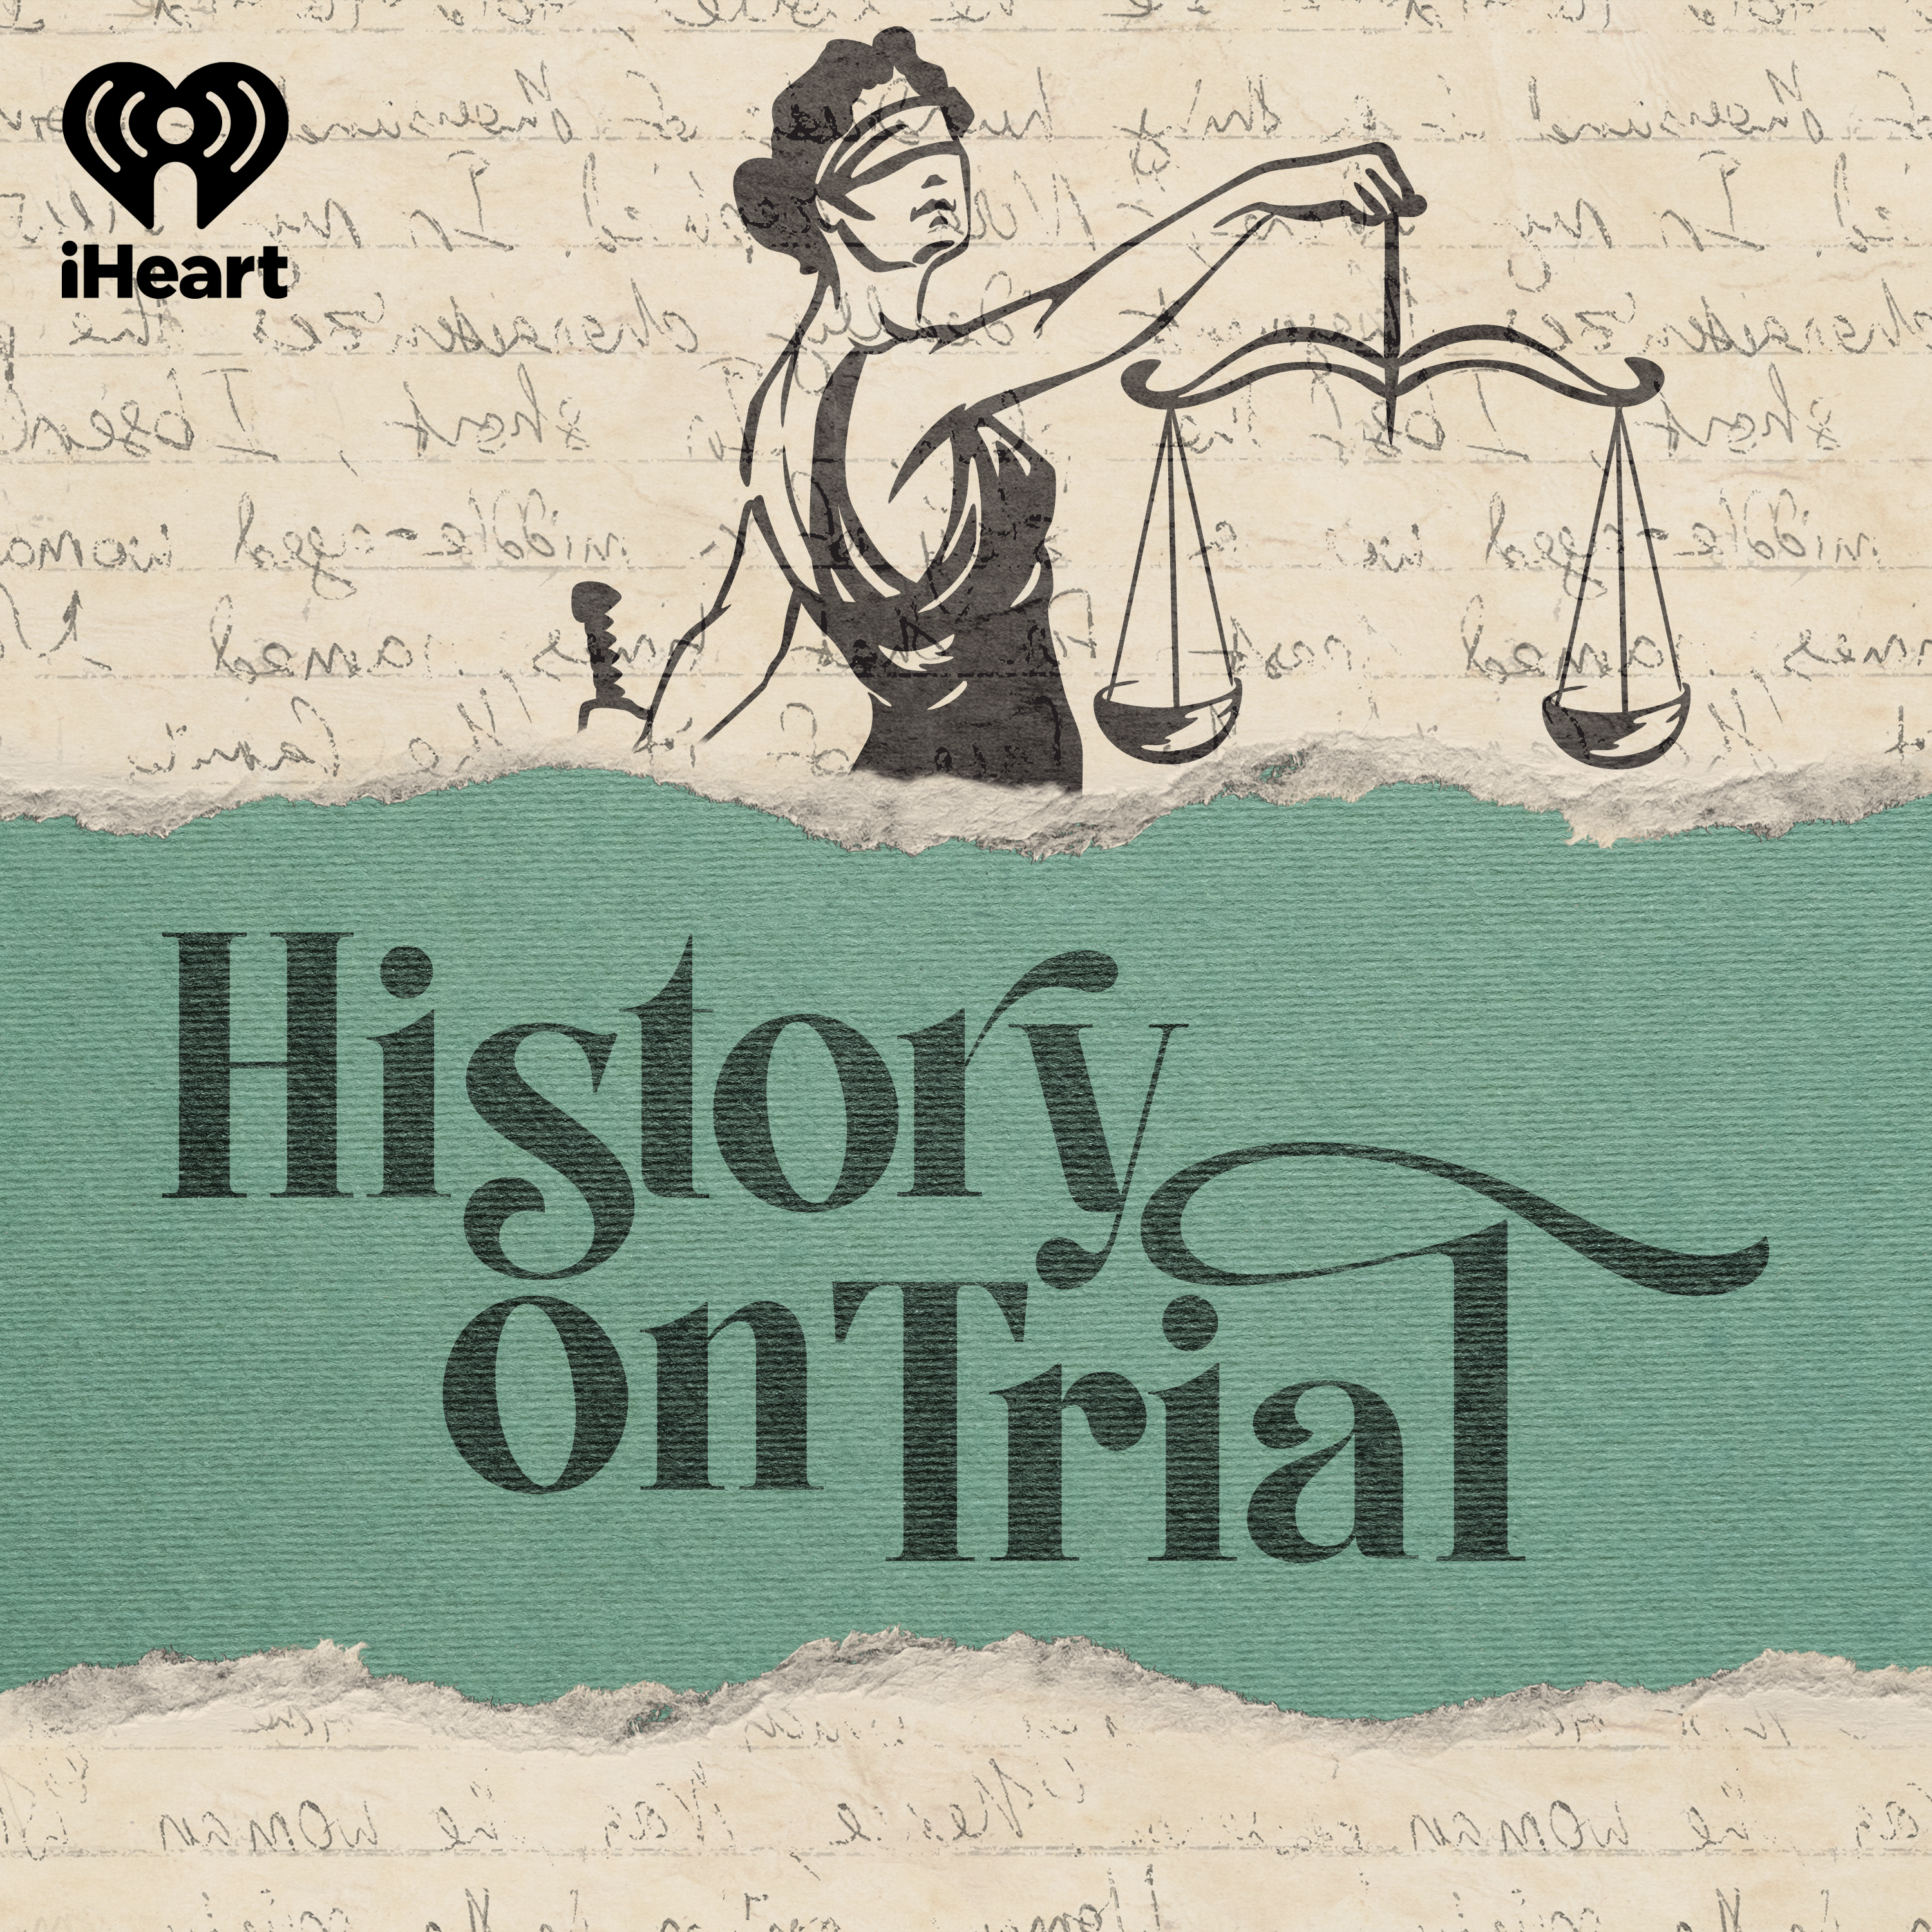 Garfield & Guiteau: An Assassin's Trial